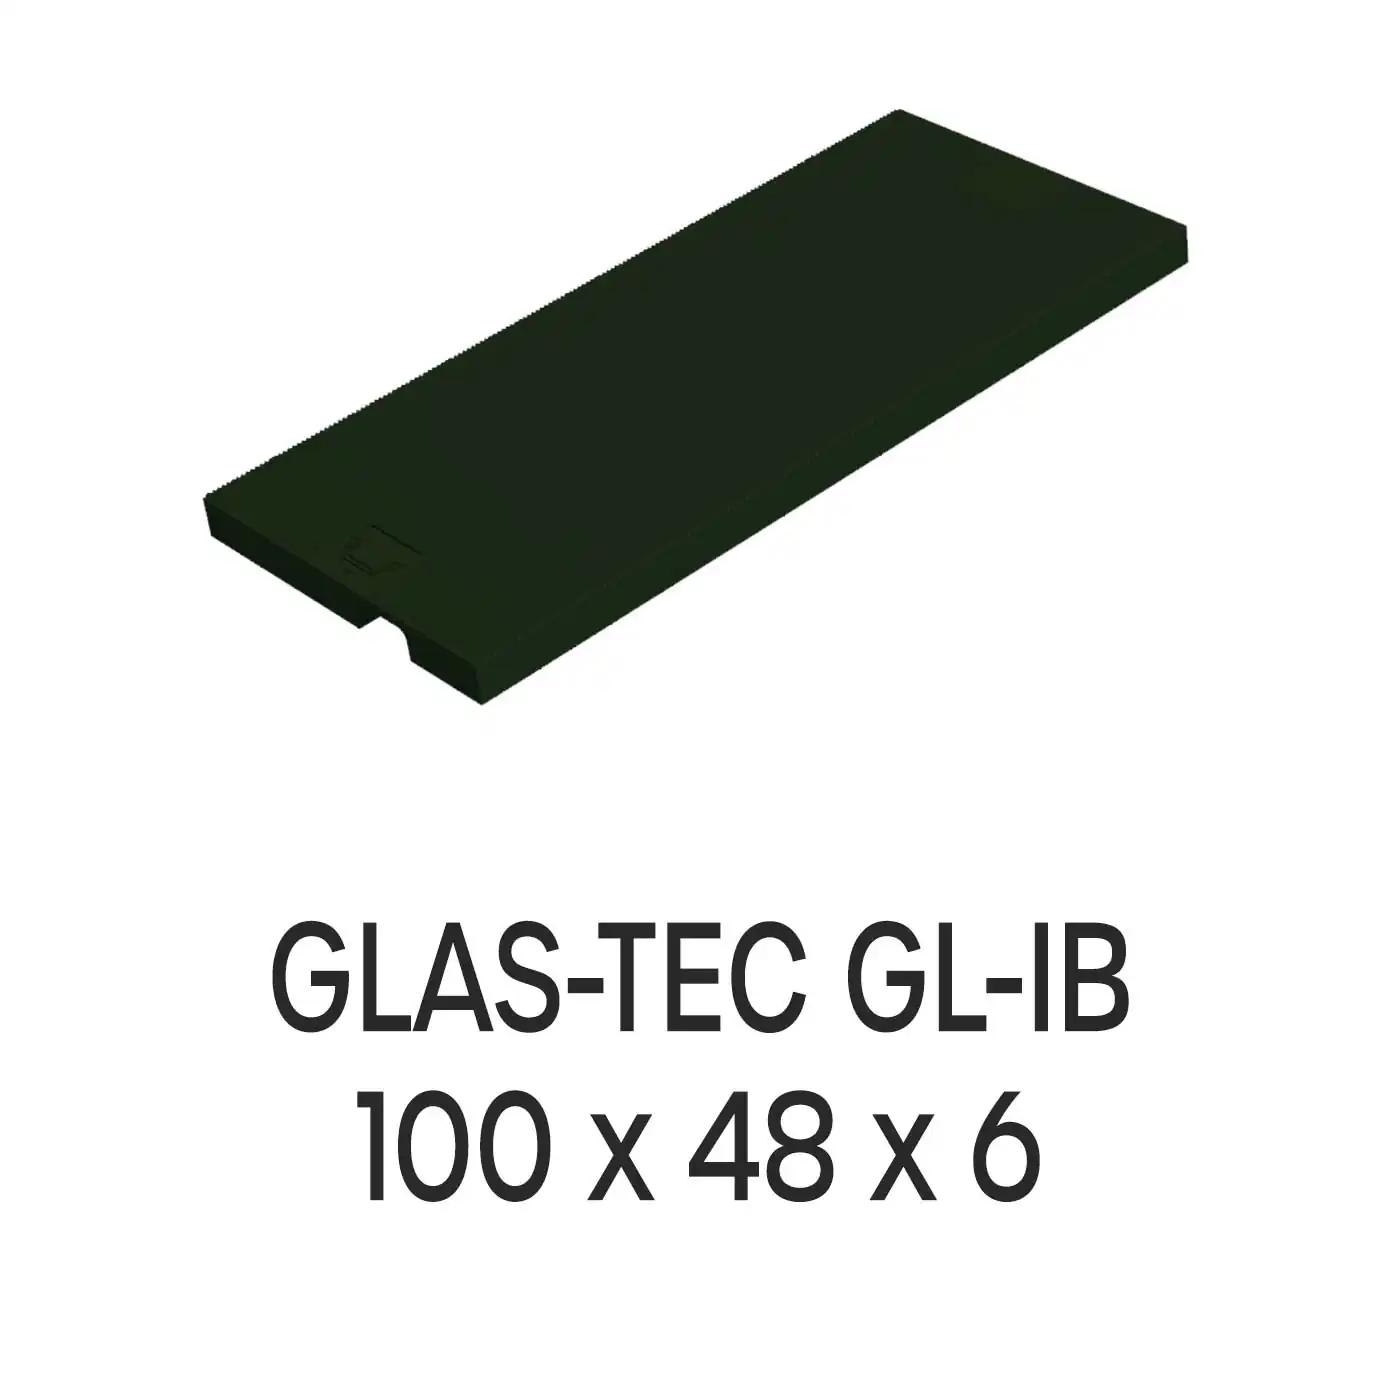 Roto Verglasungsklotz GLAS-TEC GL-IB, 100 x 48 x 6 mm, schwarz, 500 Stück